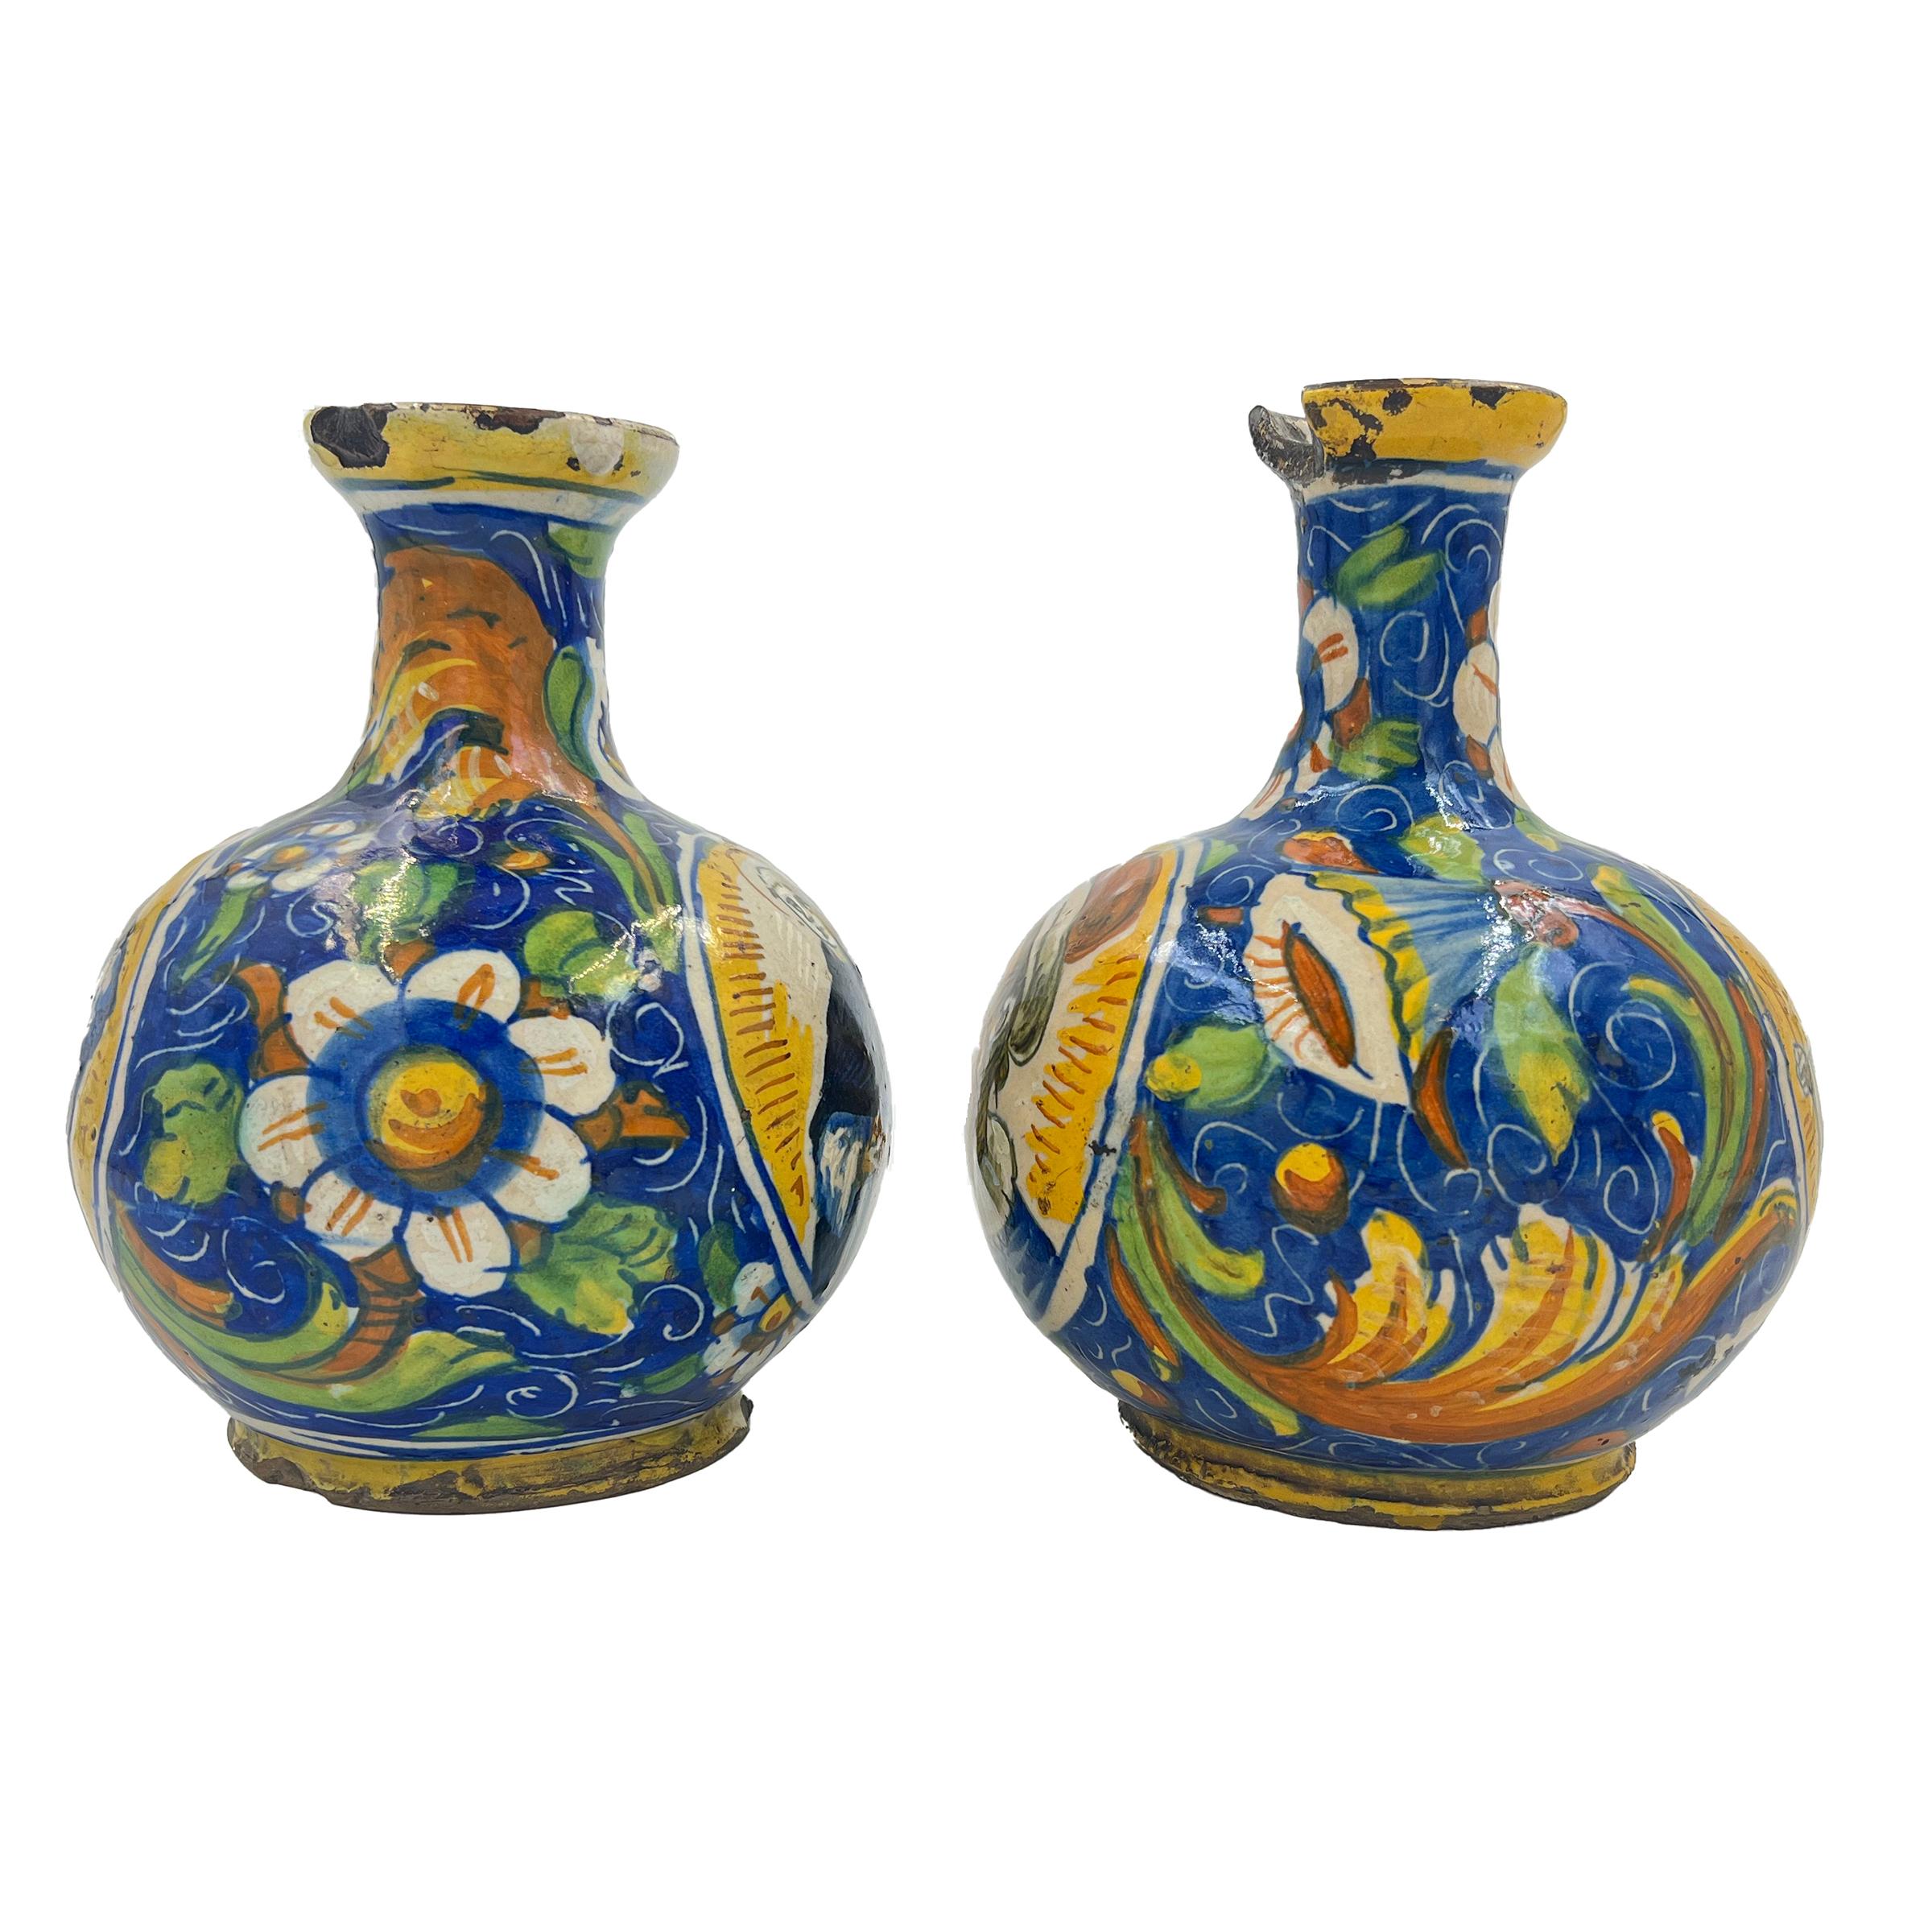 Ein feines Paar Maiolica-Vasen, die auf einer Seite mit einer religiösen Figur und auf der Rückseite mit einem Porträt bemalt sind. Die Seiten sind mit traditionellen großen Blumen verziert, die von einem gelben Rankenwerk auf blauem Grund umgeben